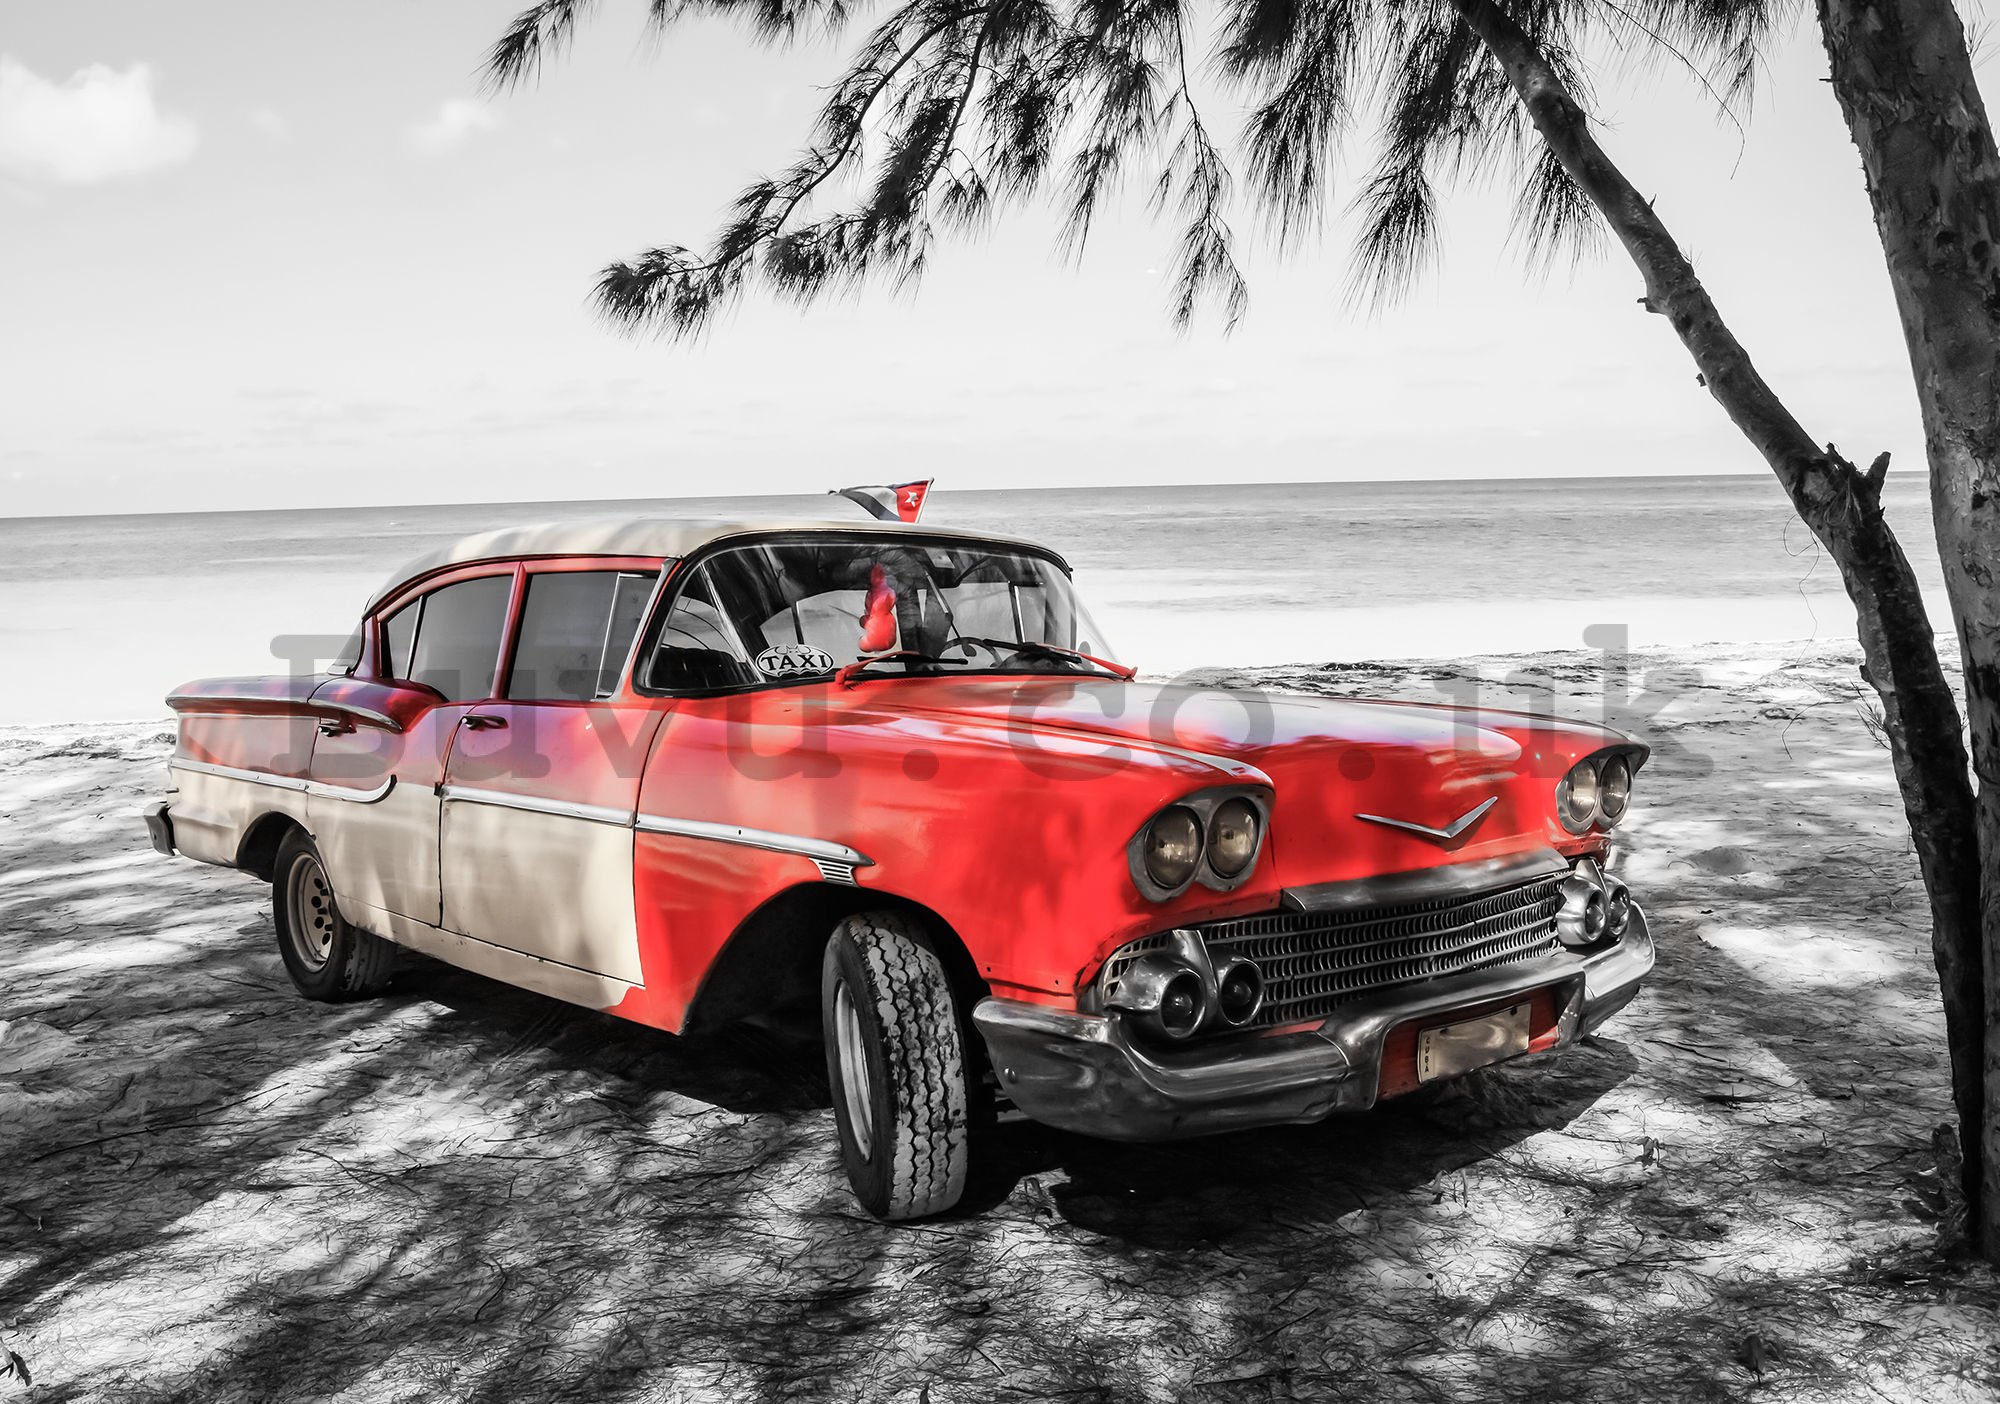 Wall mural vlies: Cuba red car by the sea - 416x254 cm